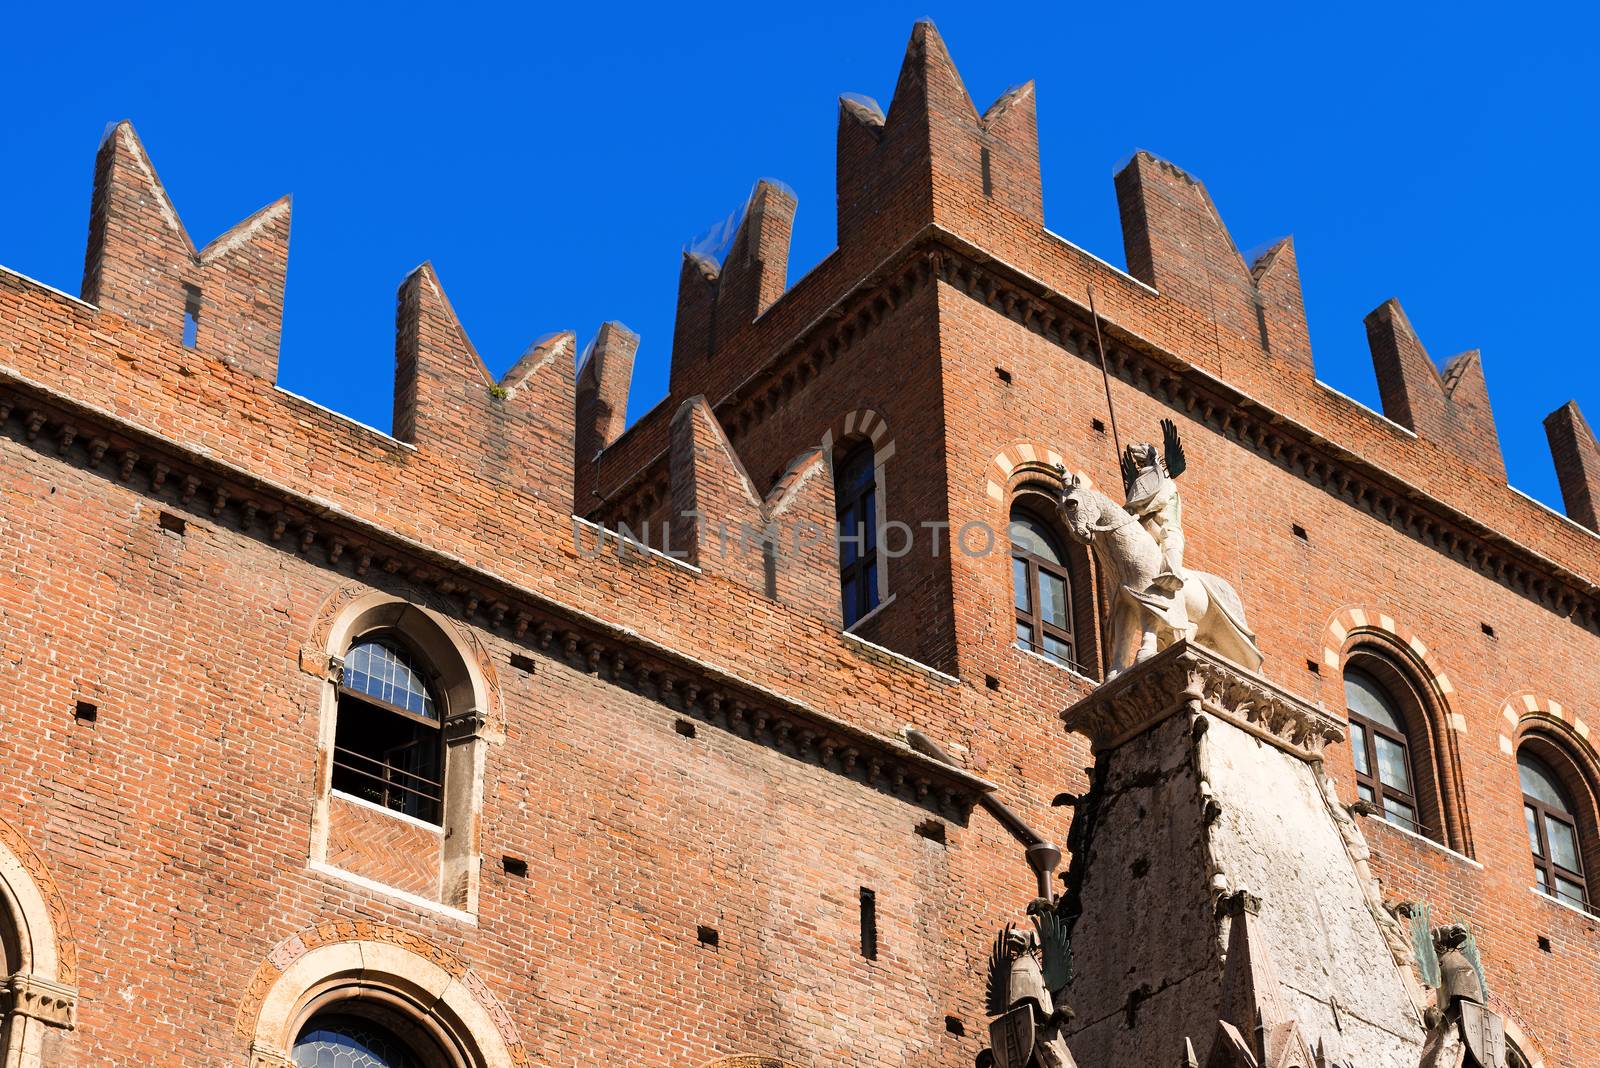 Arche Scaligere of Mastino II - Verona Italy by catalby